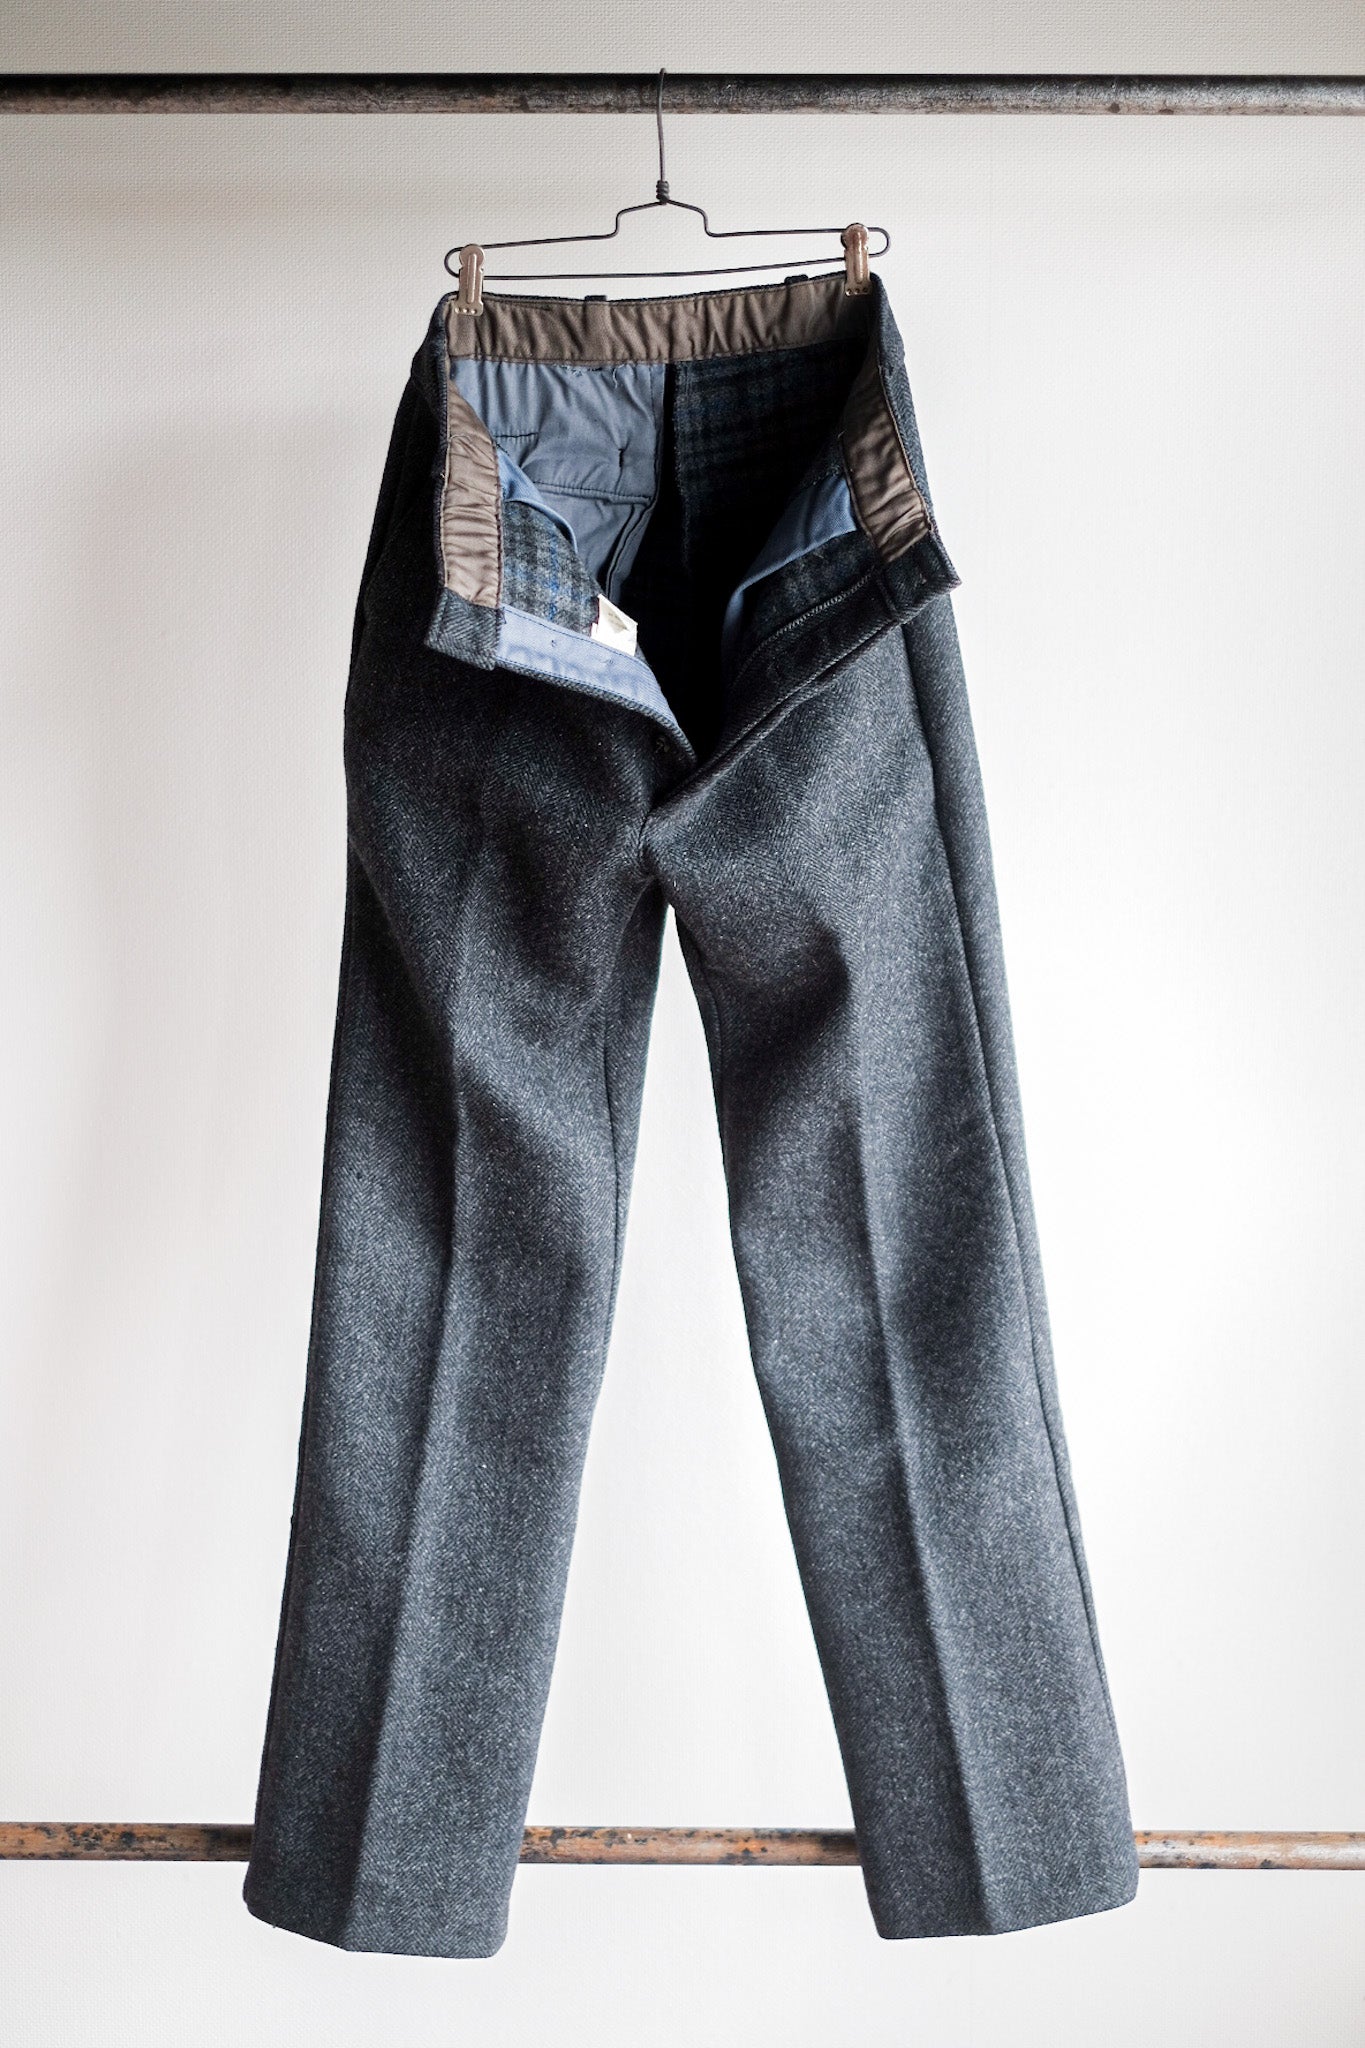 [~ 50's] Pantalon de travail HBT vintage français "Fabric pascal" "Stock mort"